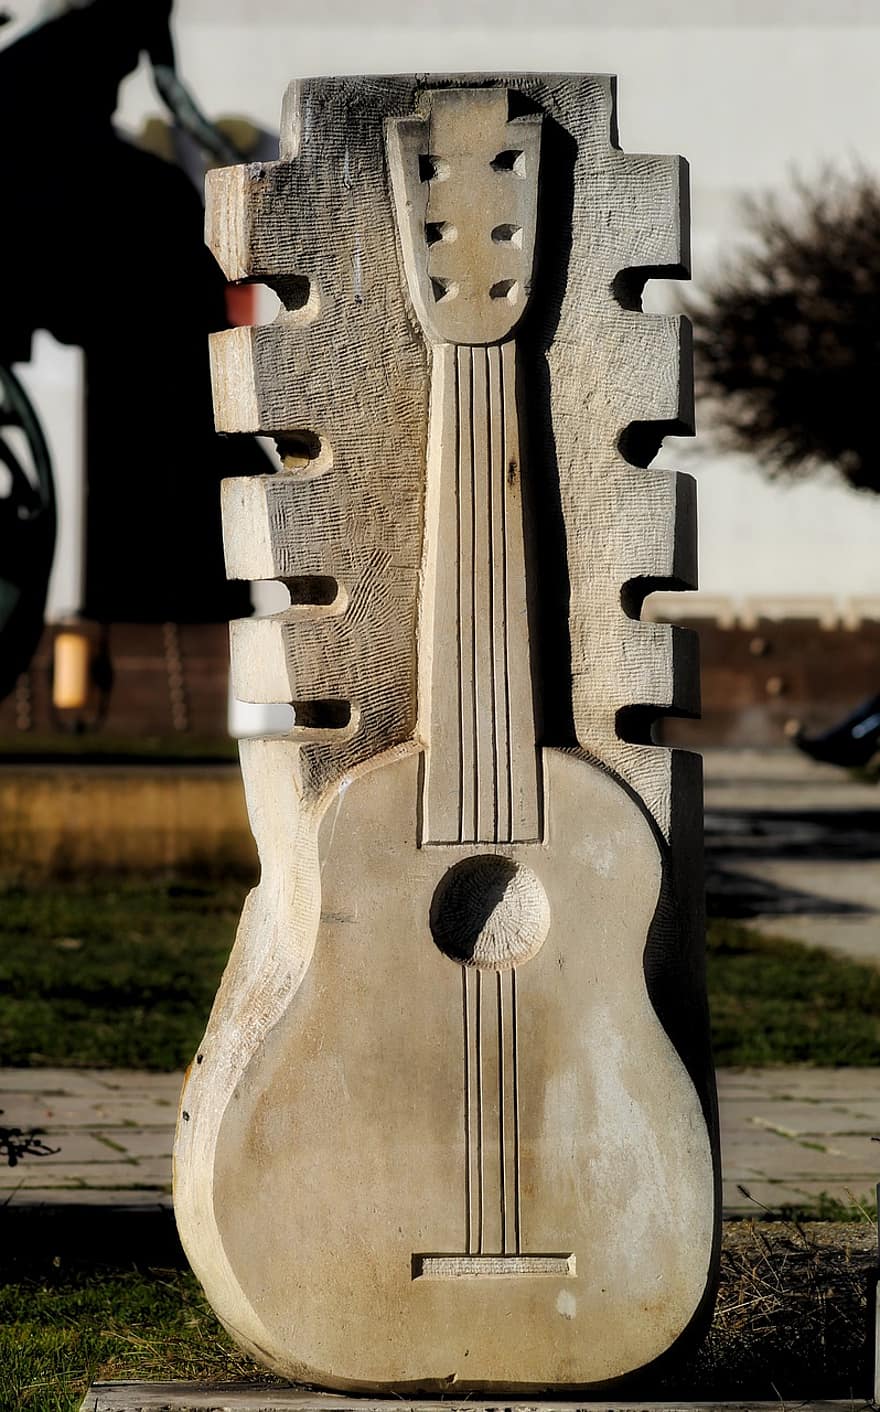 μνημείο, Βουκουρέστι, κιθάρα γλυπτική, κιθάρα, μουσικό όργανο, ξύλο, γκρο πλαν, χορδές, εξοπλισμός, σειρά, παλαιός